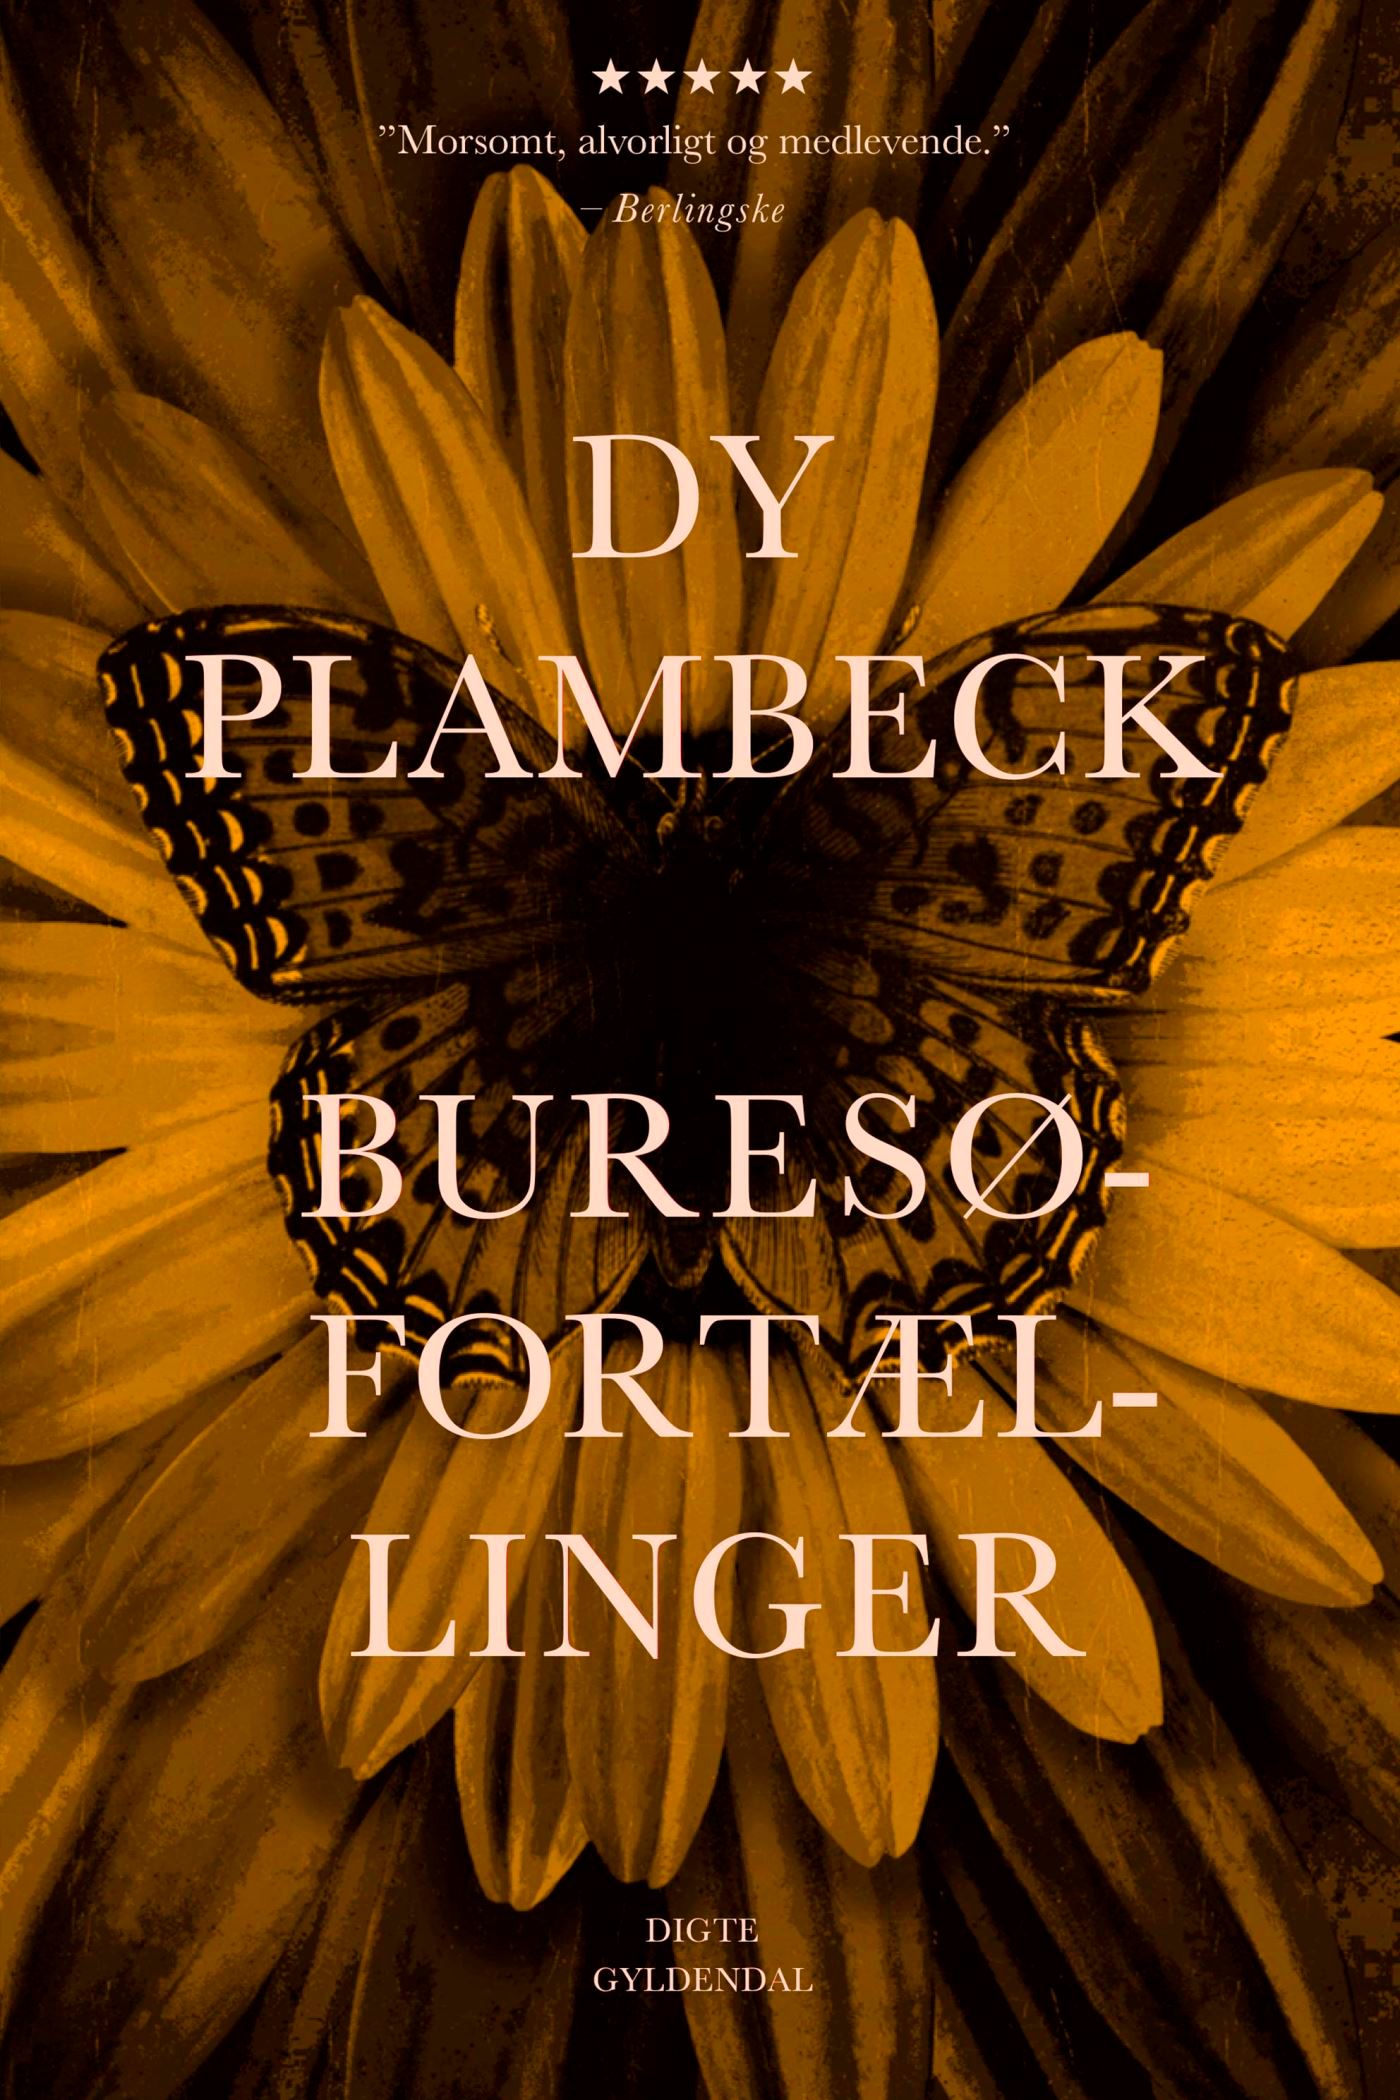 Buresø-fortællinger, e-bog af Dy Plambeck